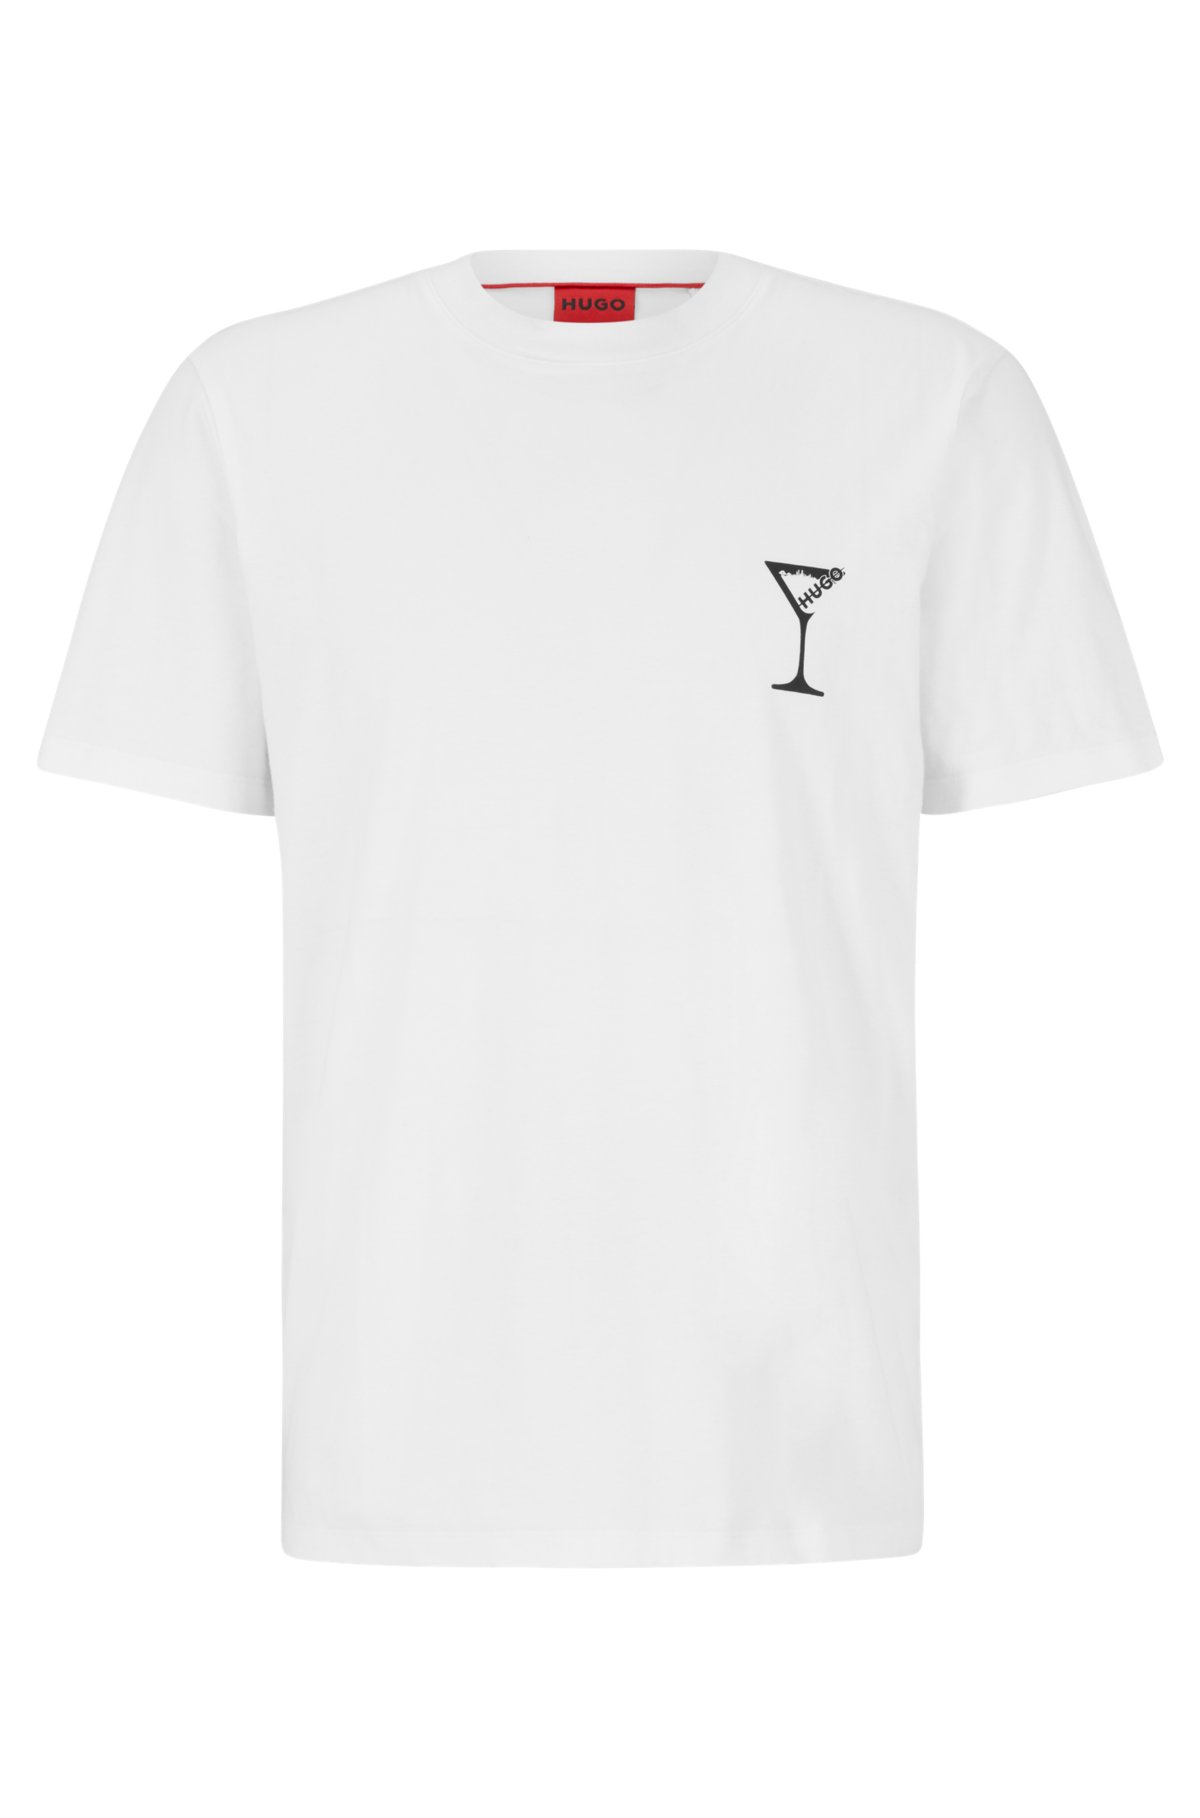 Fendi - Logo-Print Cotton-Jersey T-Shirt - Men - Black Fendi